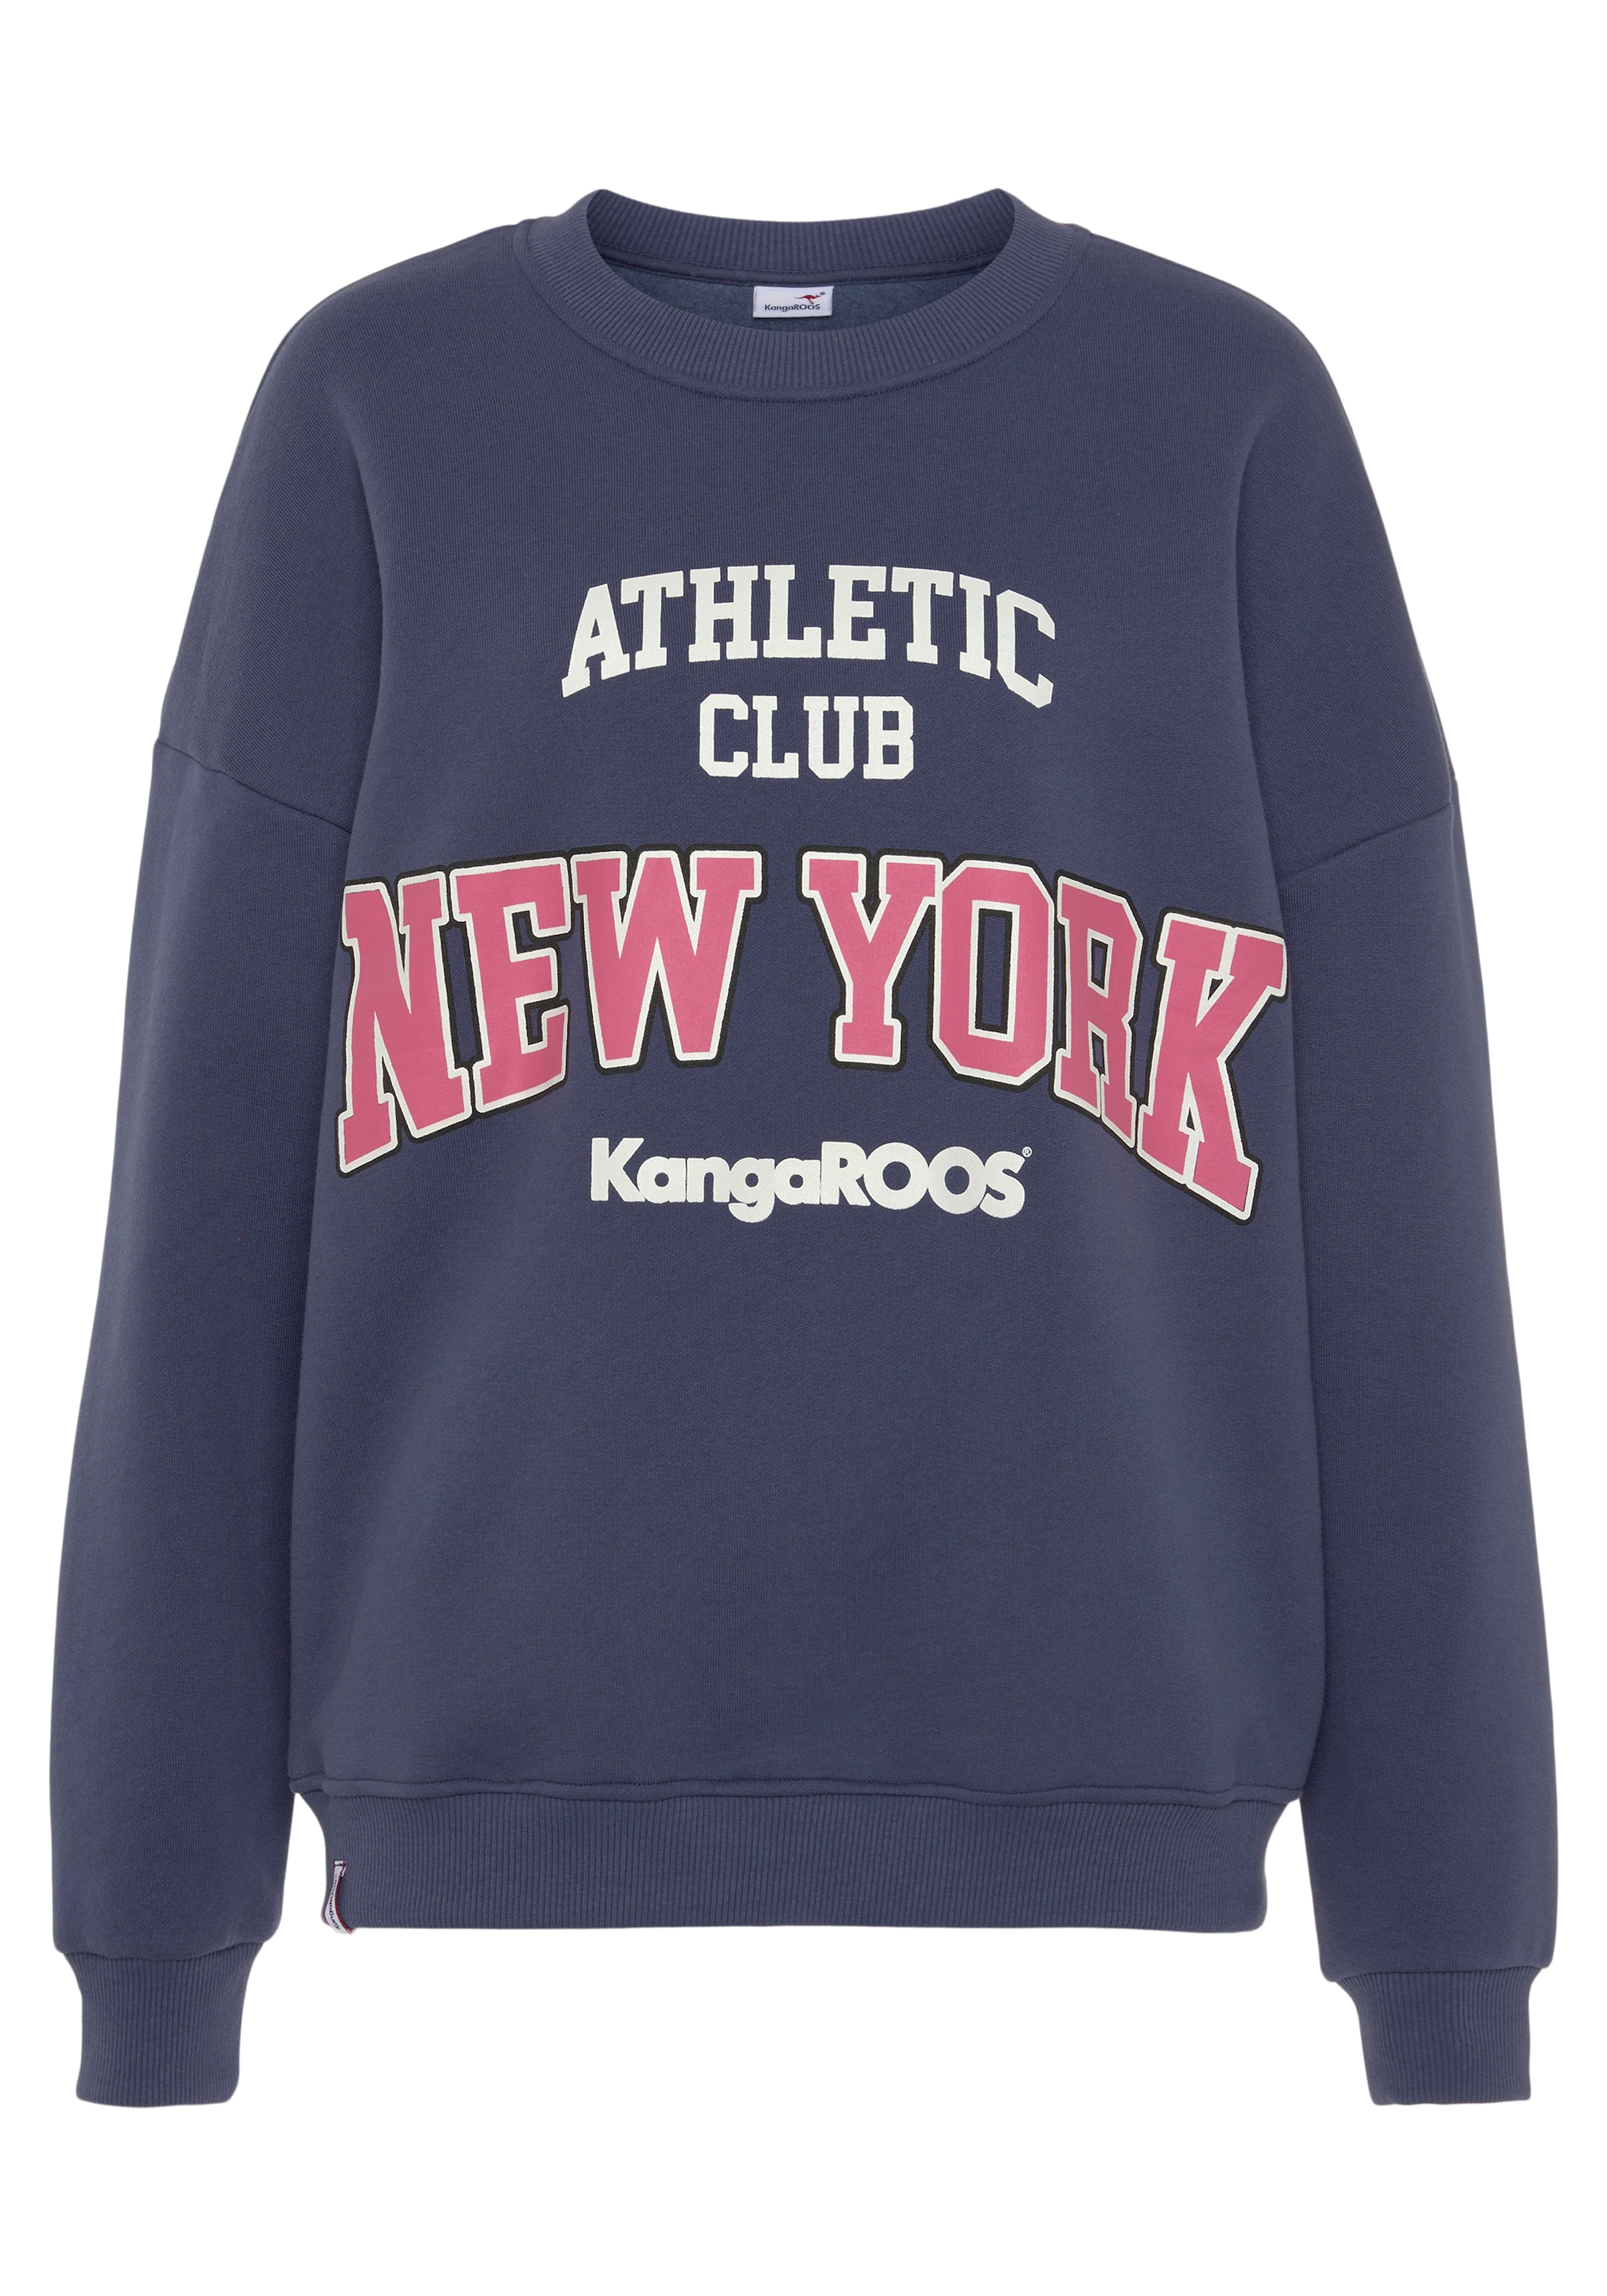 NEUE mit großem bestellen KangaROOS im Sweatshirt, Logodruck College-Style - KOLLEKTION online